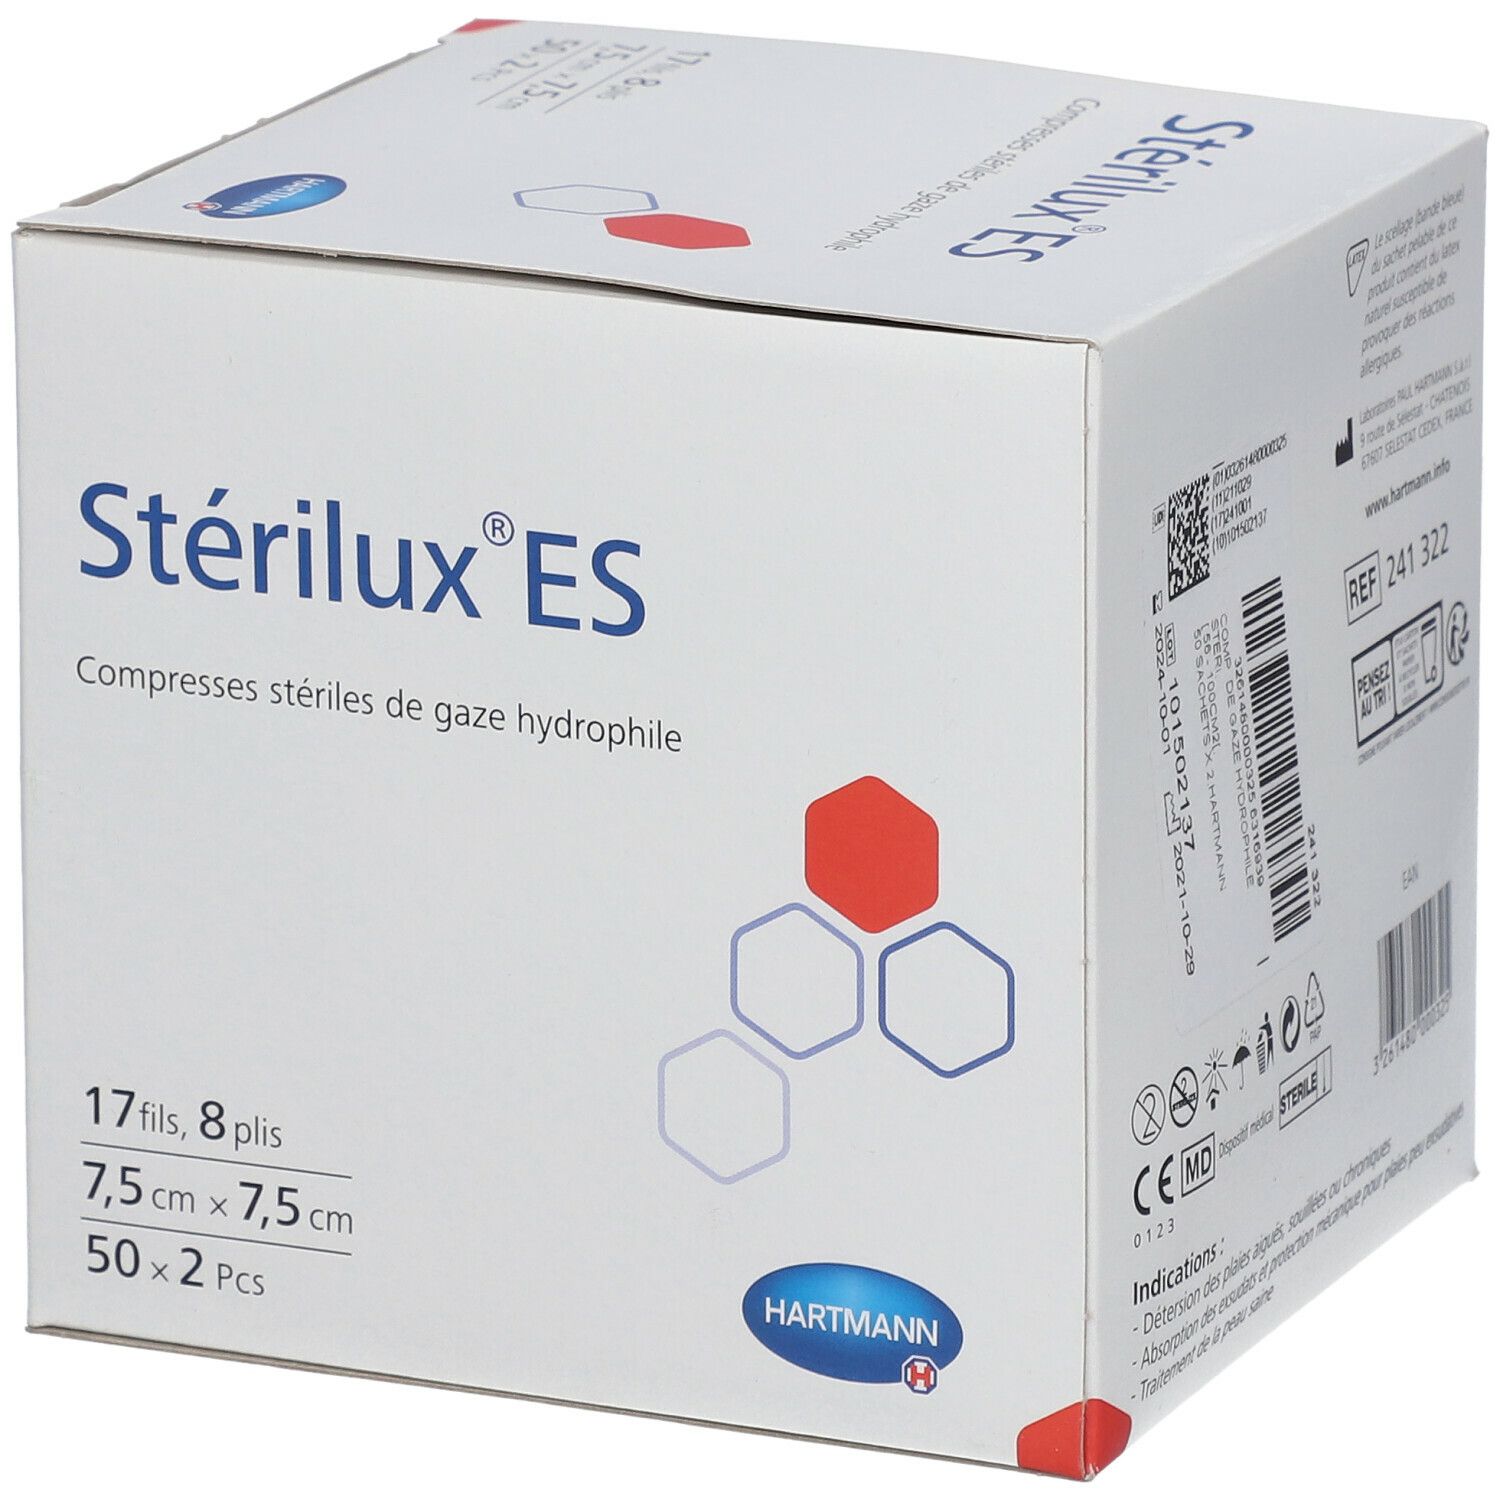 STERILUX ES Compresse de gaze stérile 7,5cm x 7,5cm - Pharmacie